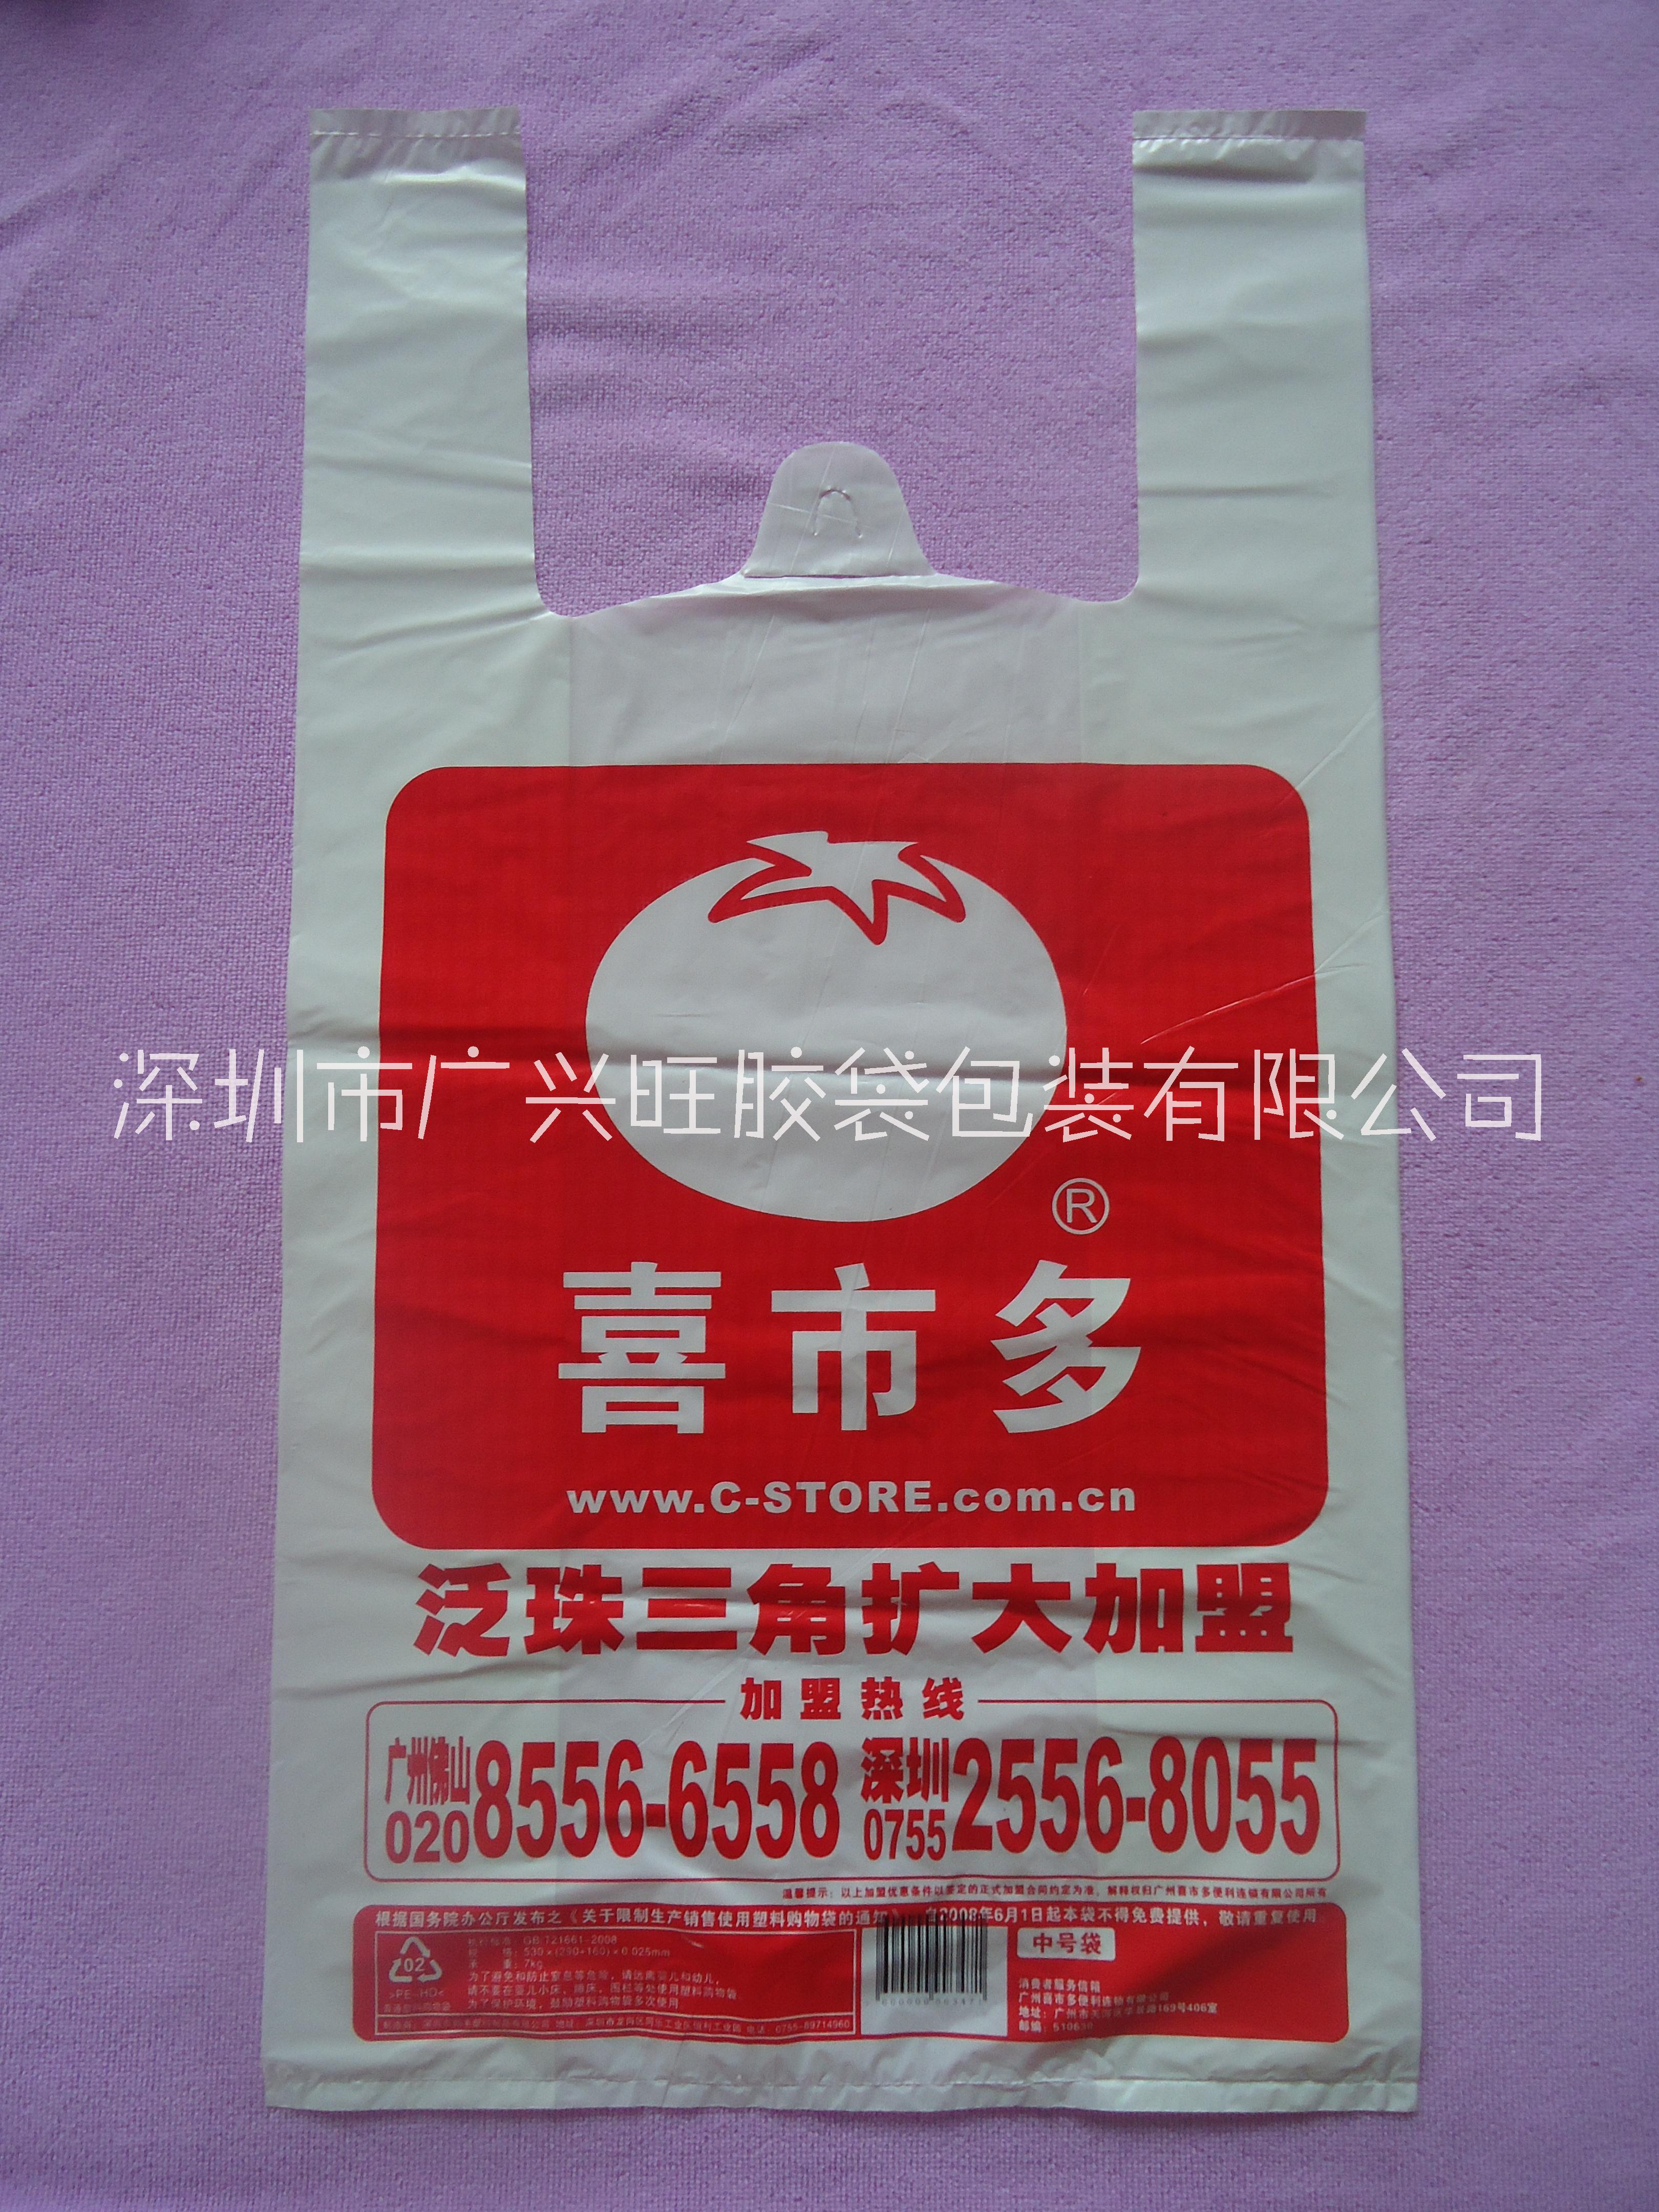 港货店胶袋定制 外贸大型港货超市塑料袋 印各种标志塑料袋 深圳广兴旺胶袋厂